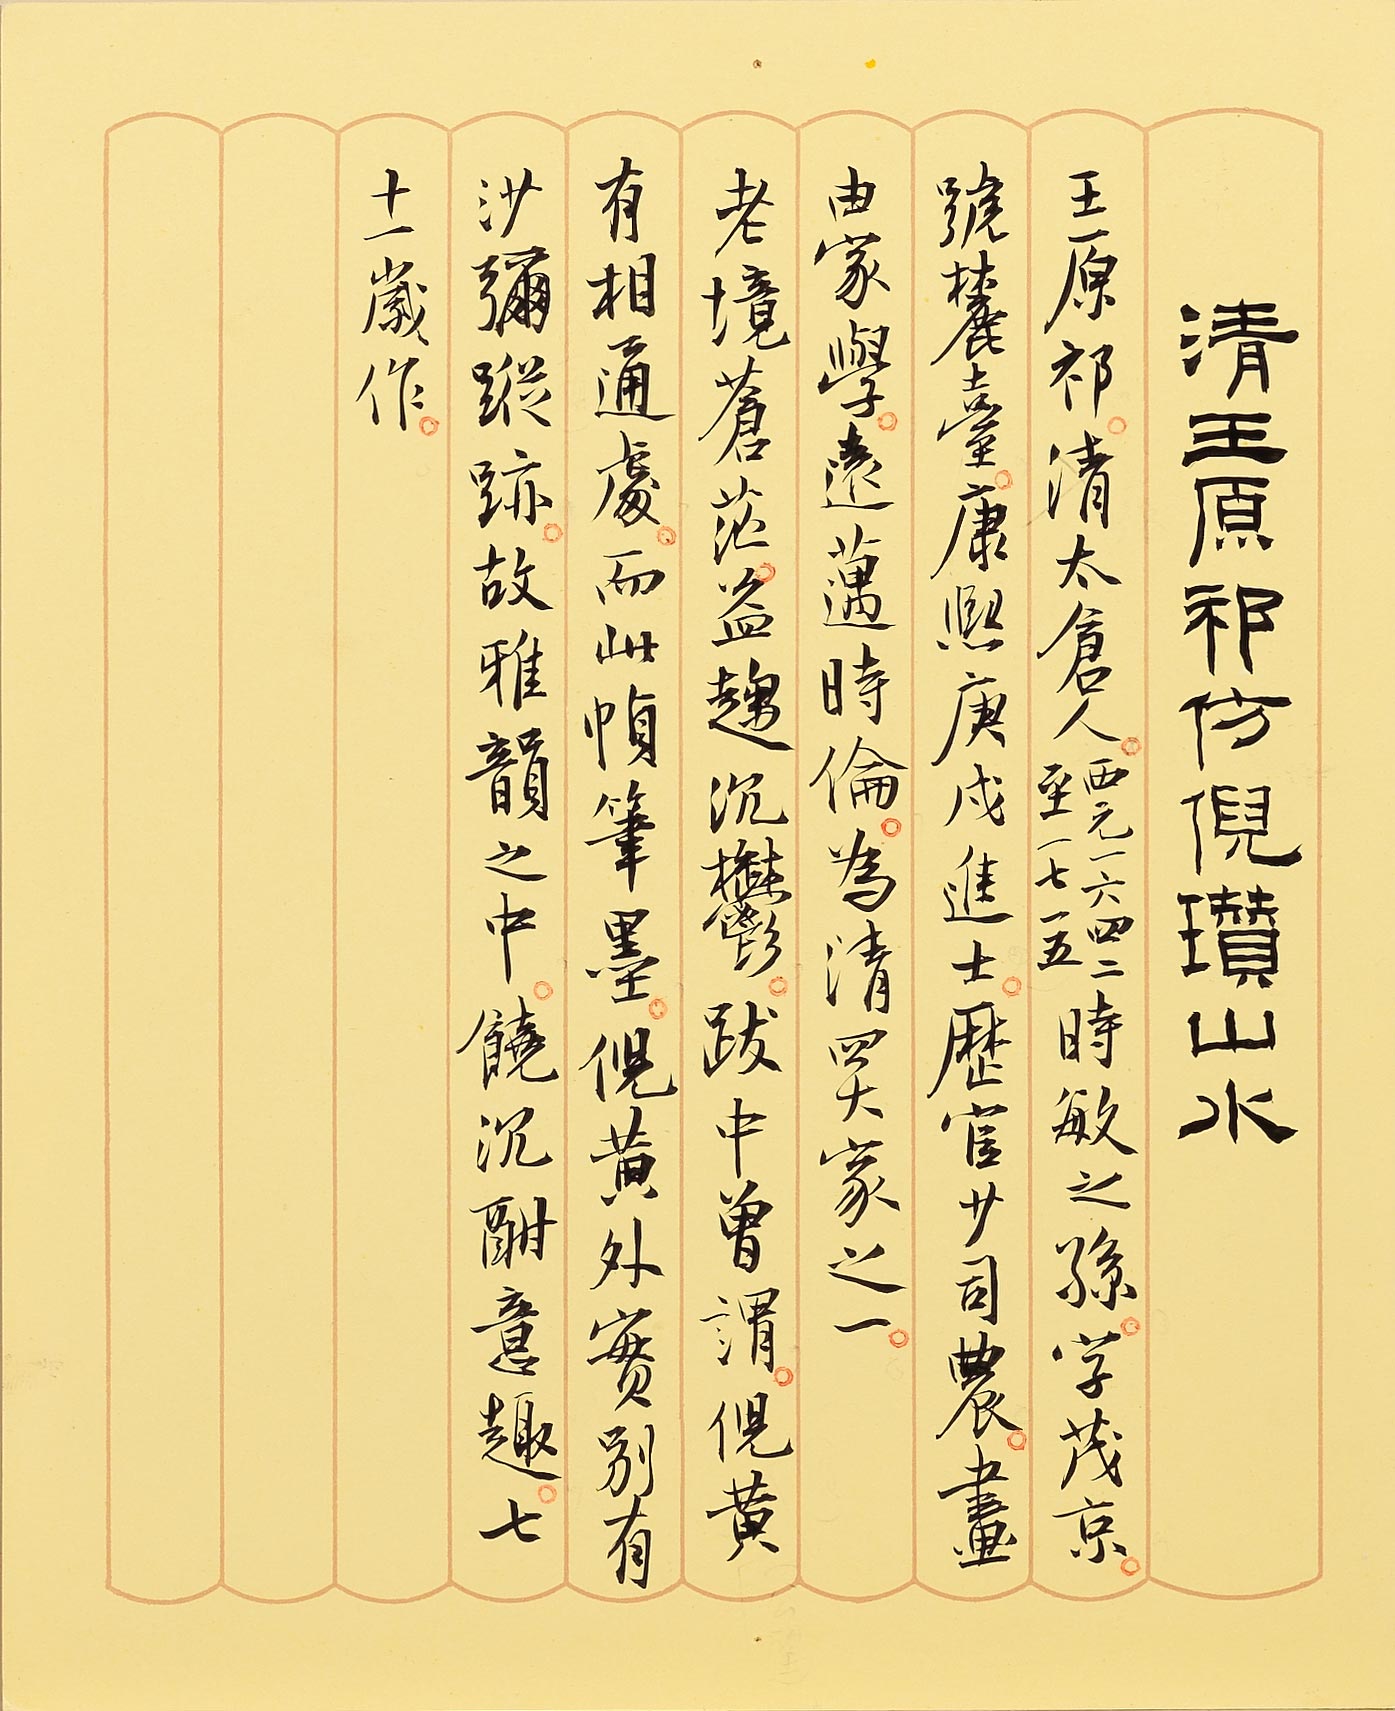 民國五十年代中期以後出現的墨書說明卡。撰文書寫者為江兆申先生。